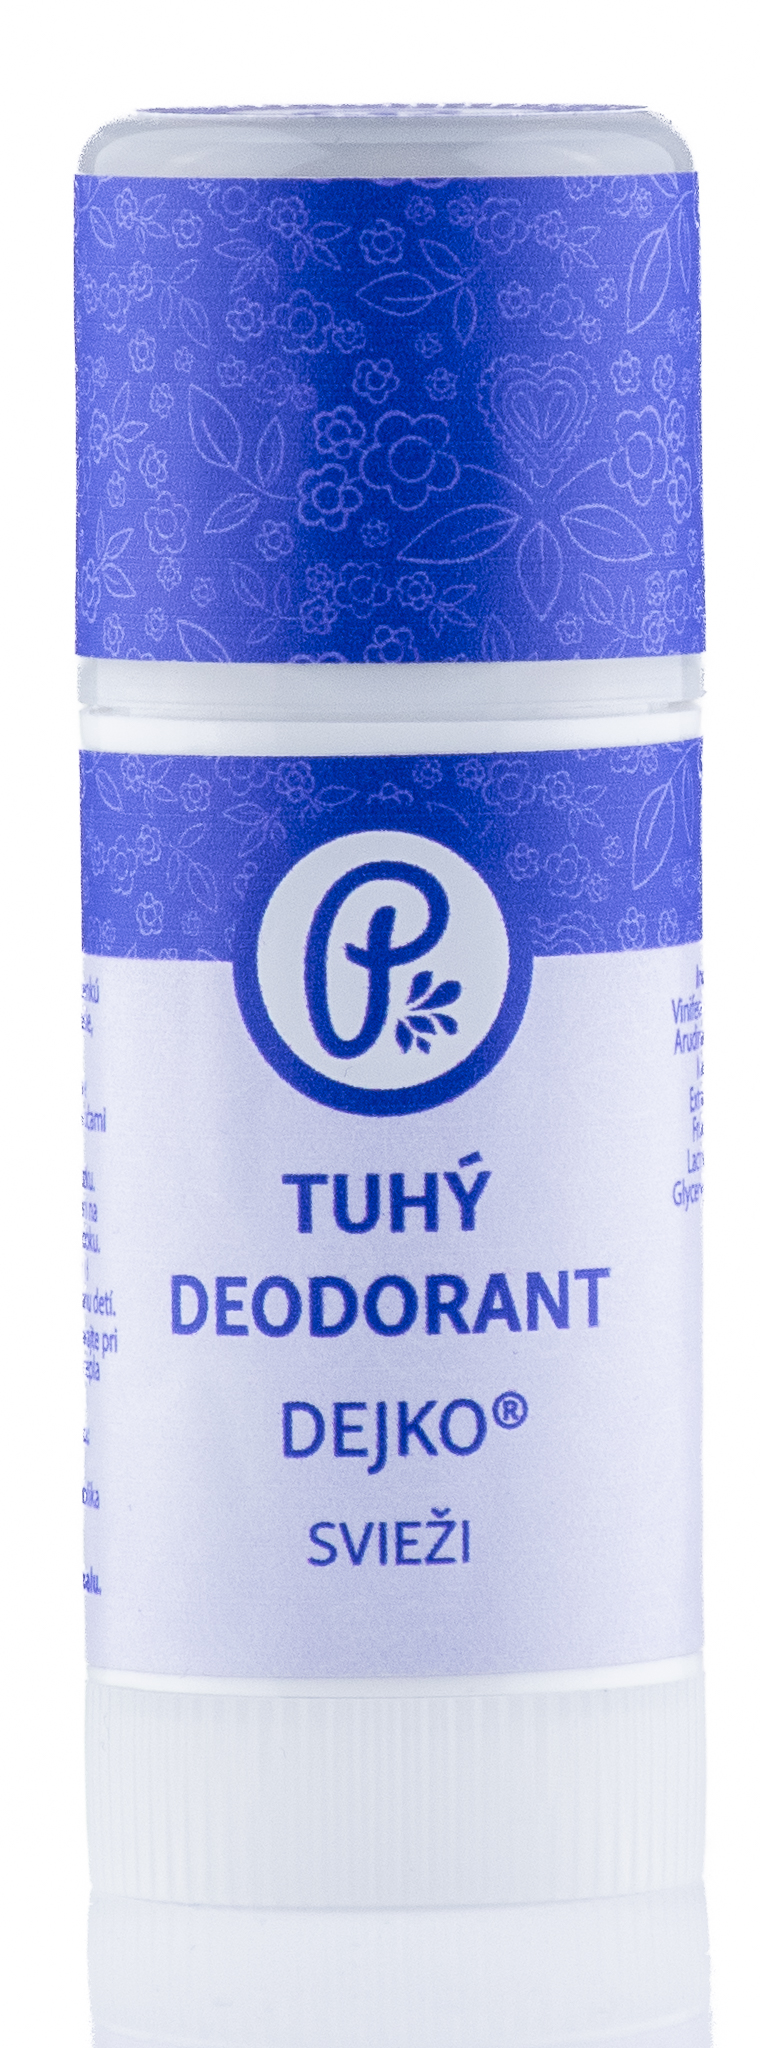 E-shop PANAKEIA DEJKO® - tuhý prírodný deodorant svieži 40ml